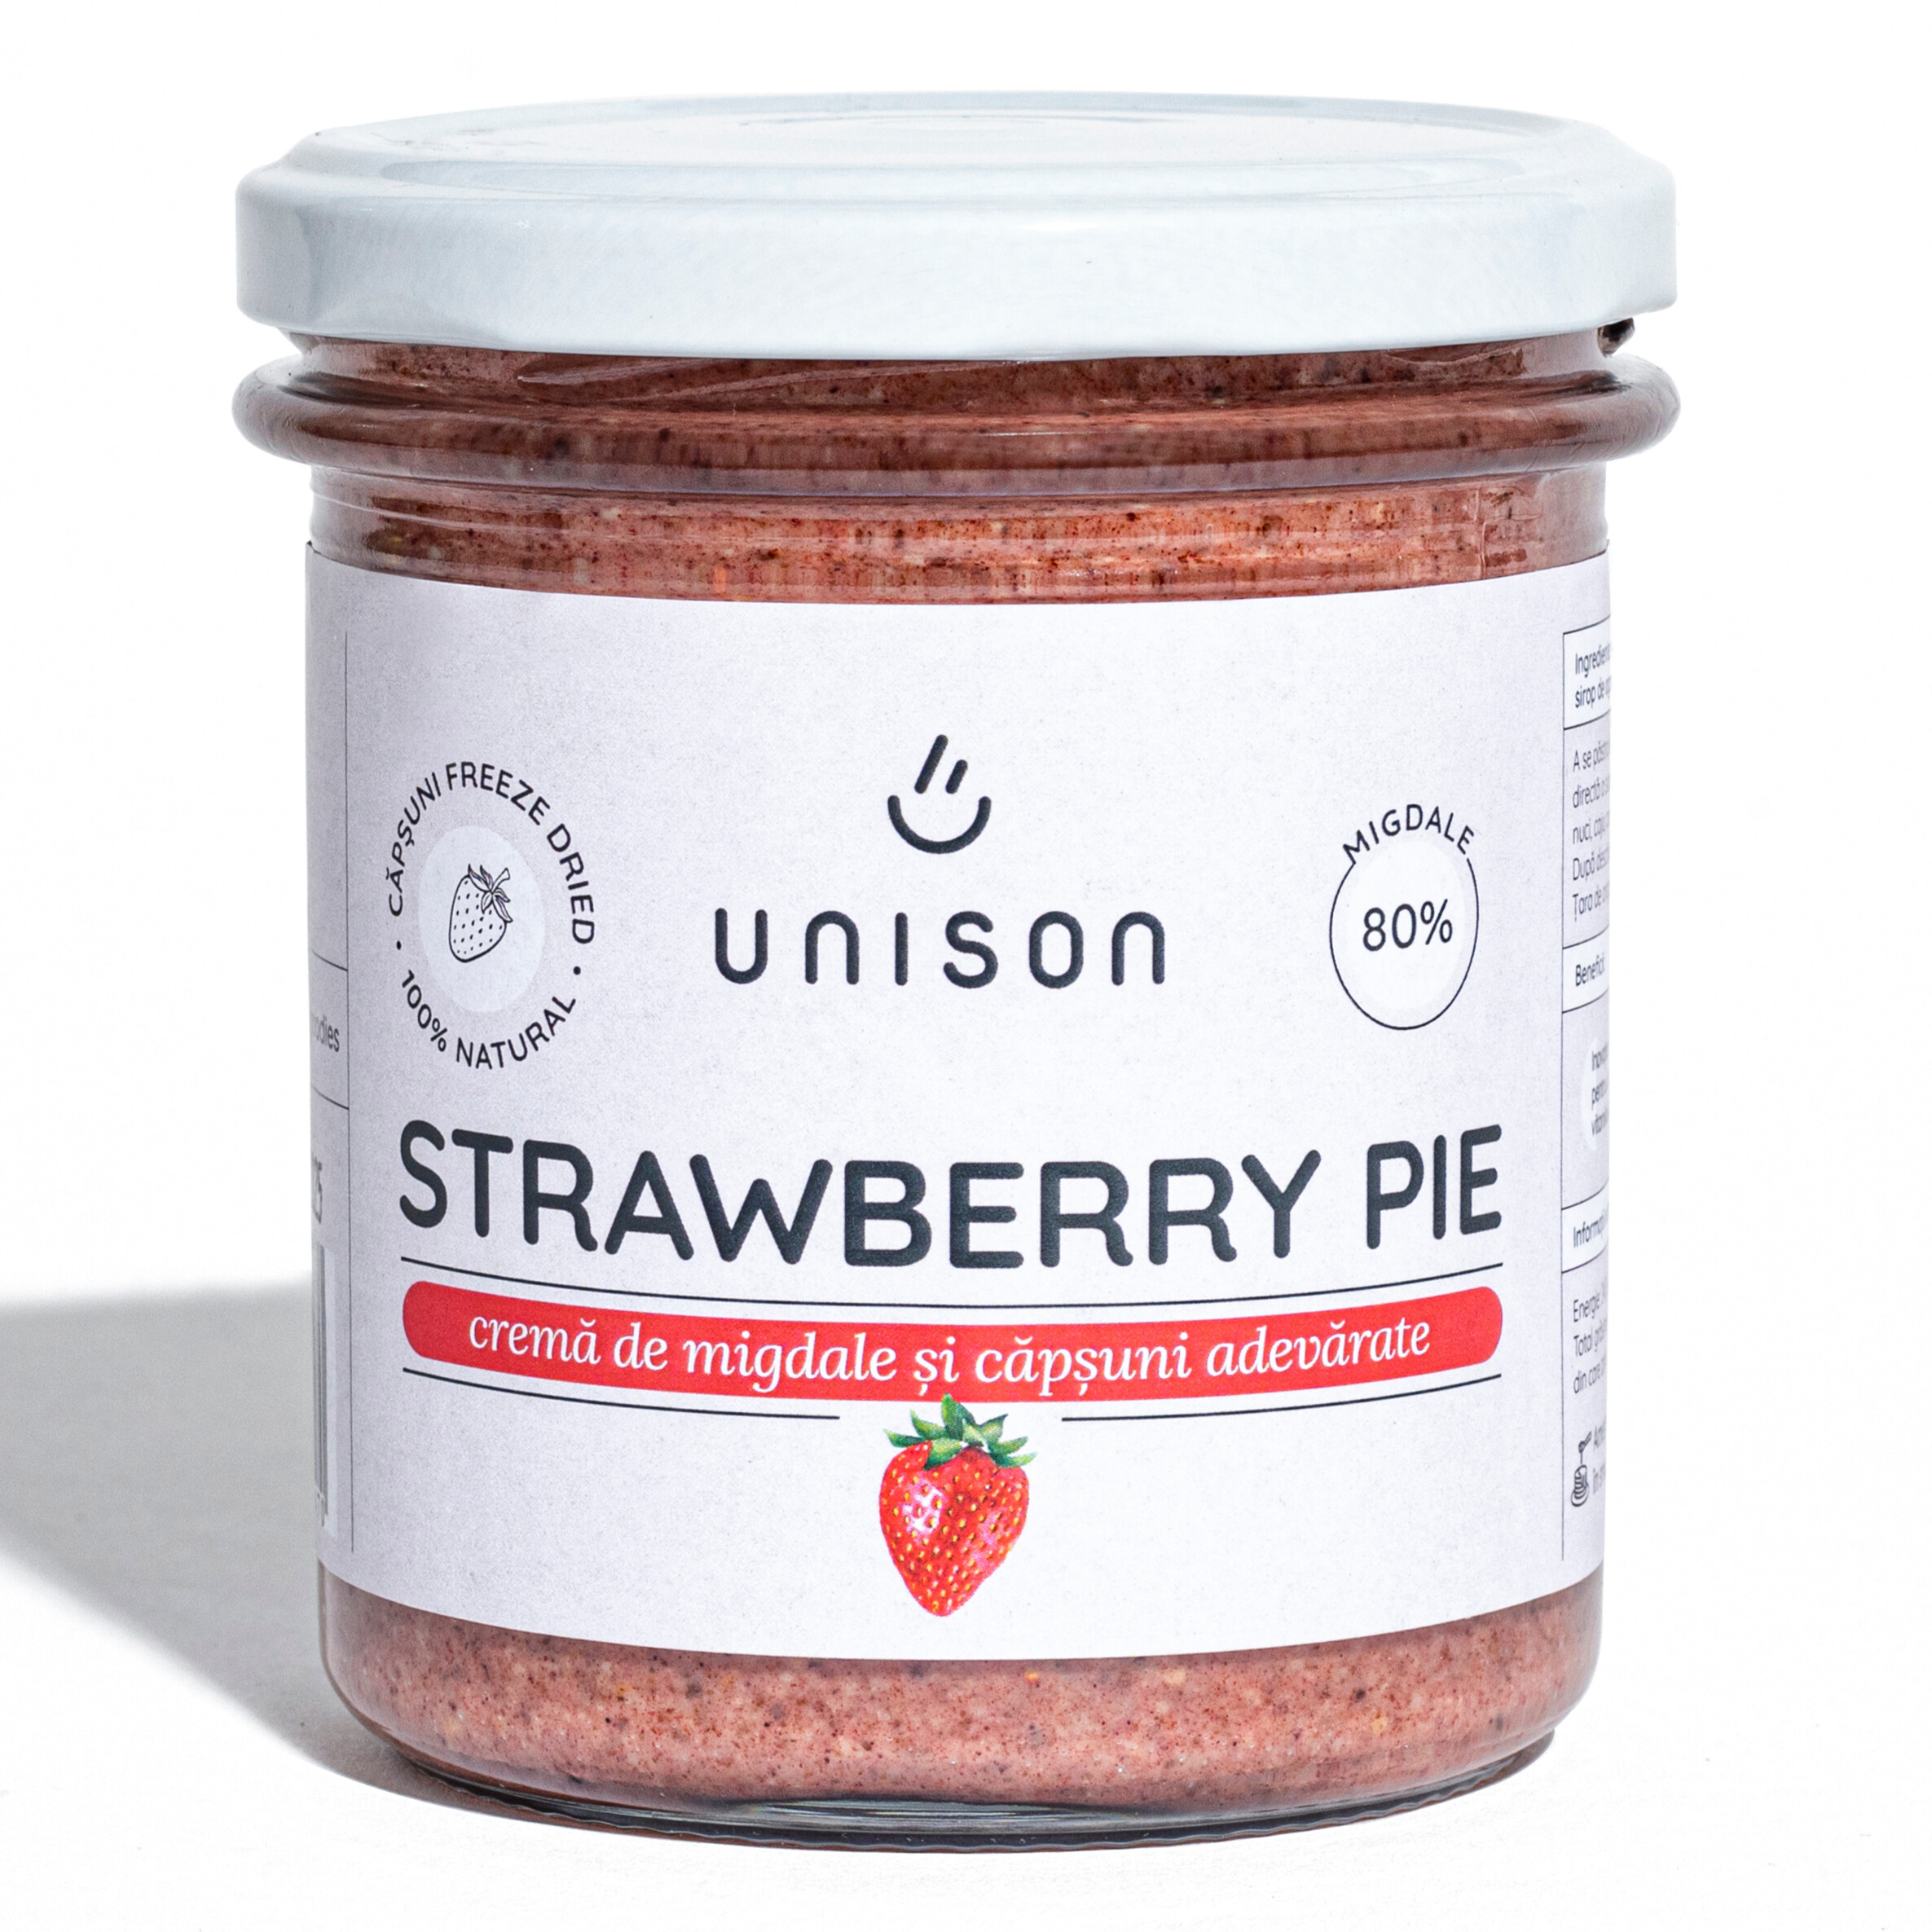 Crema de migdale si capsuni Strawberry Pie, 300 g, Unison